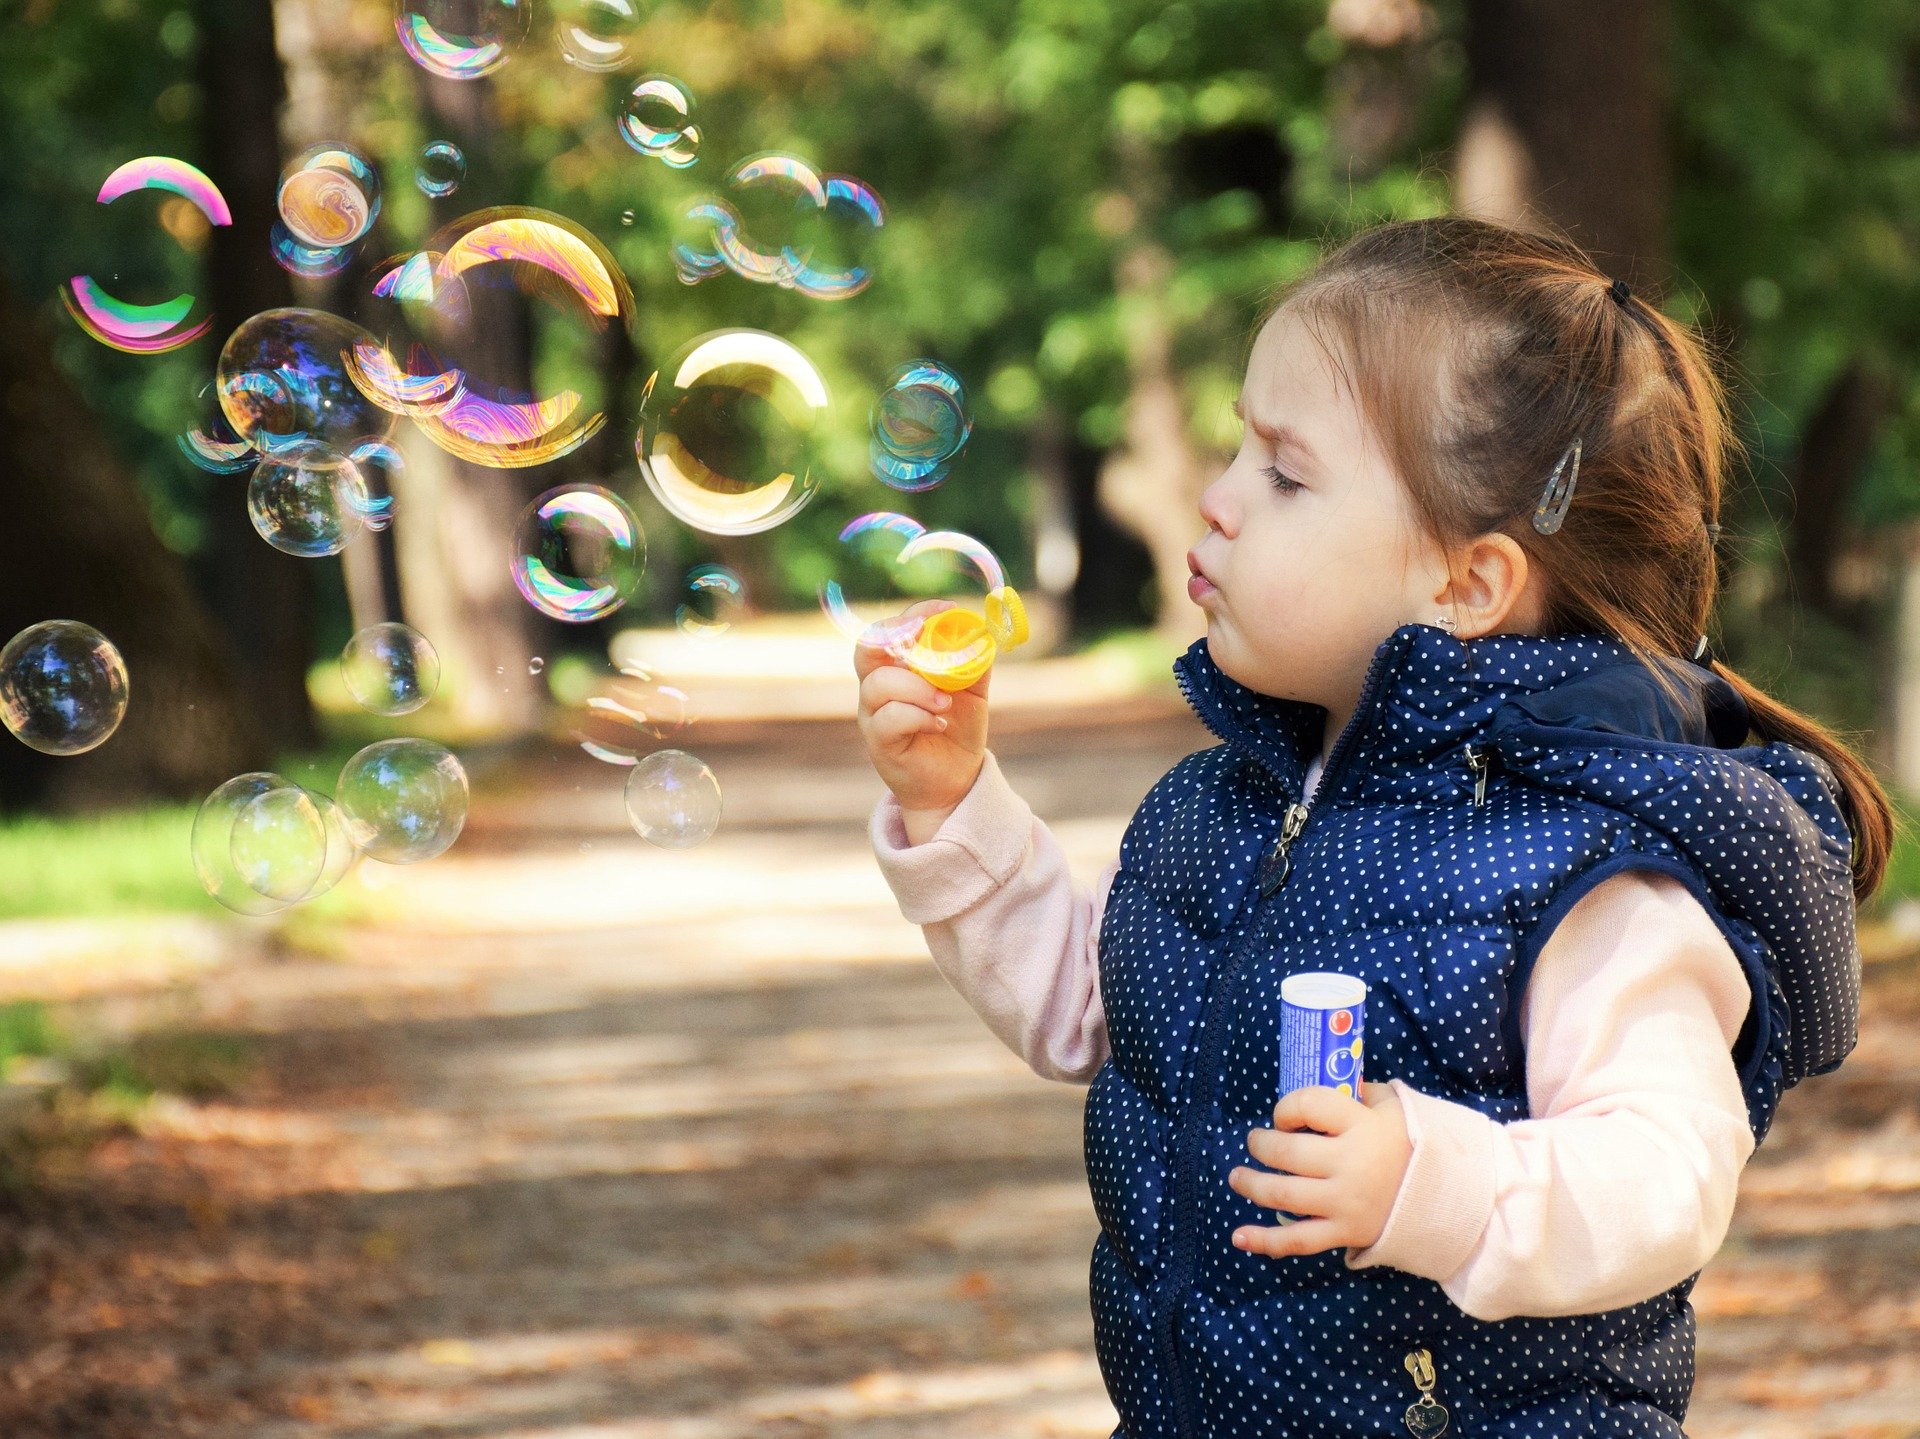 Bild zum Schritt 8 für das Bastel- und DIY-Abenteuer für Kinder: 'Seifenblasen pusten: Während ganz kleine Kinder die Seifenblasen bestaunen, möchten...'